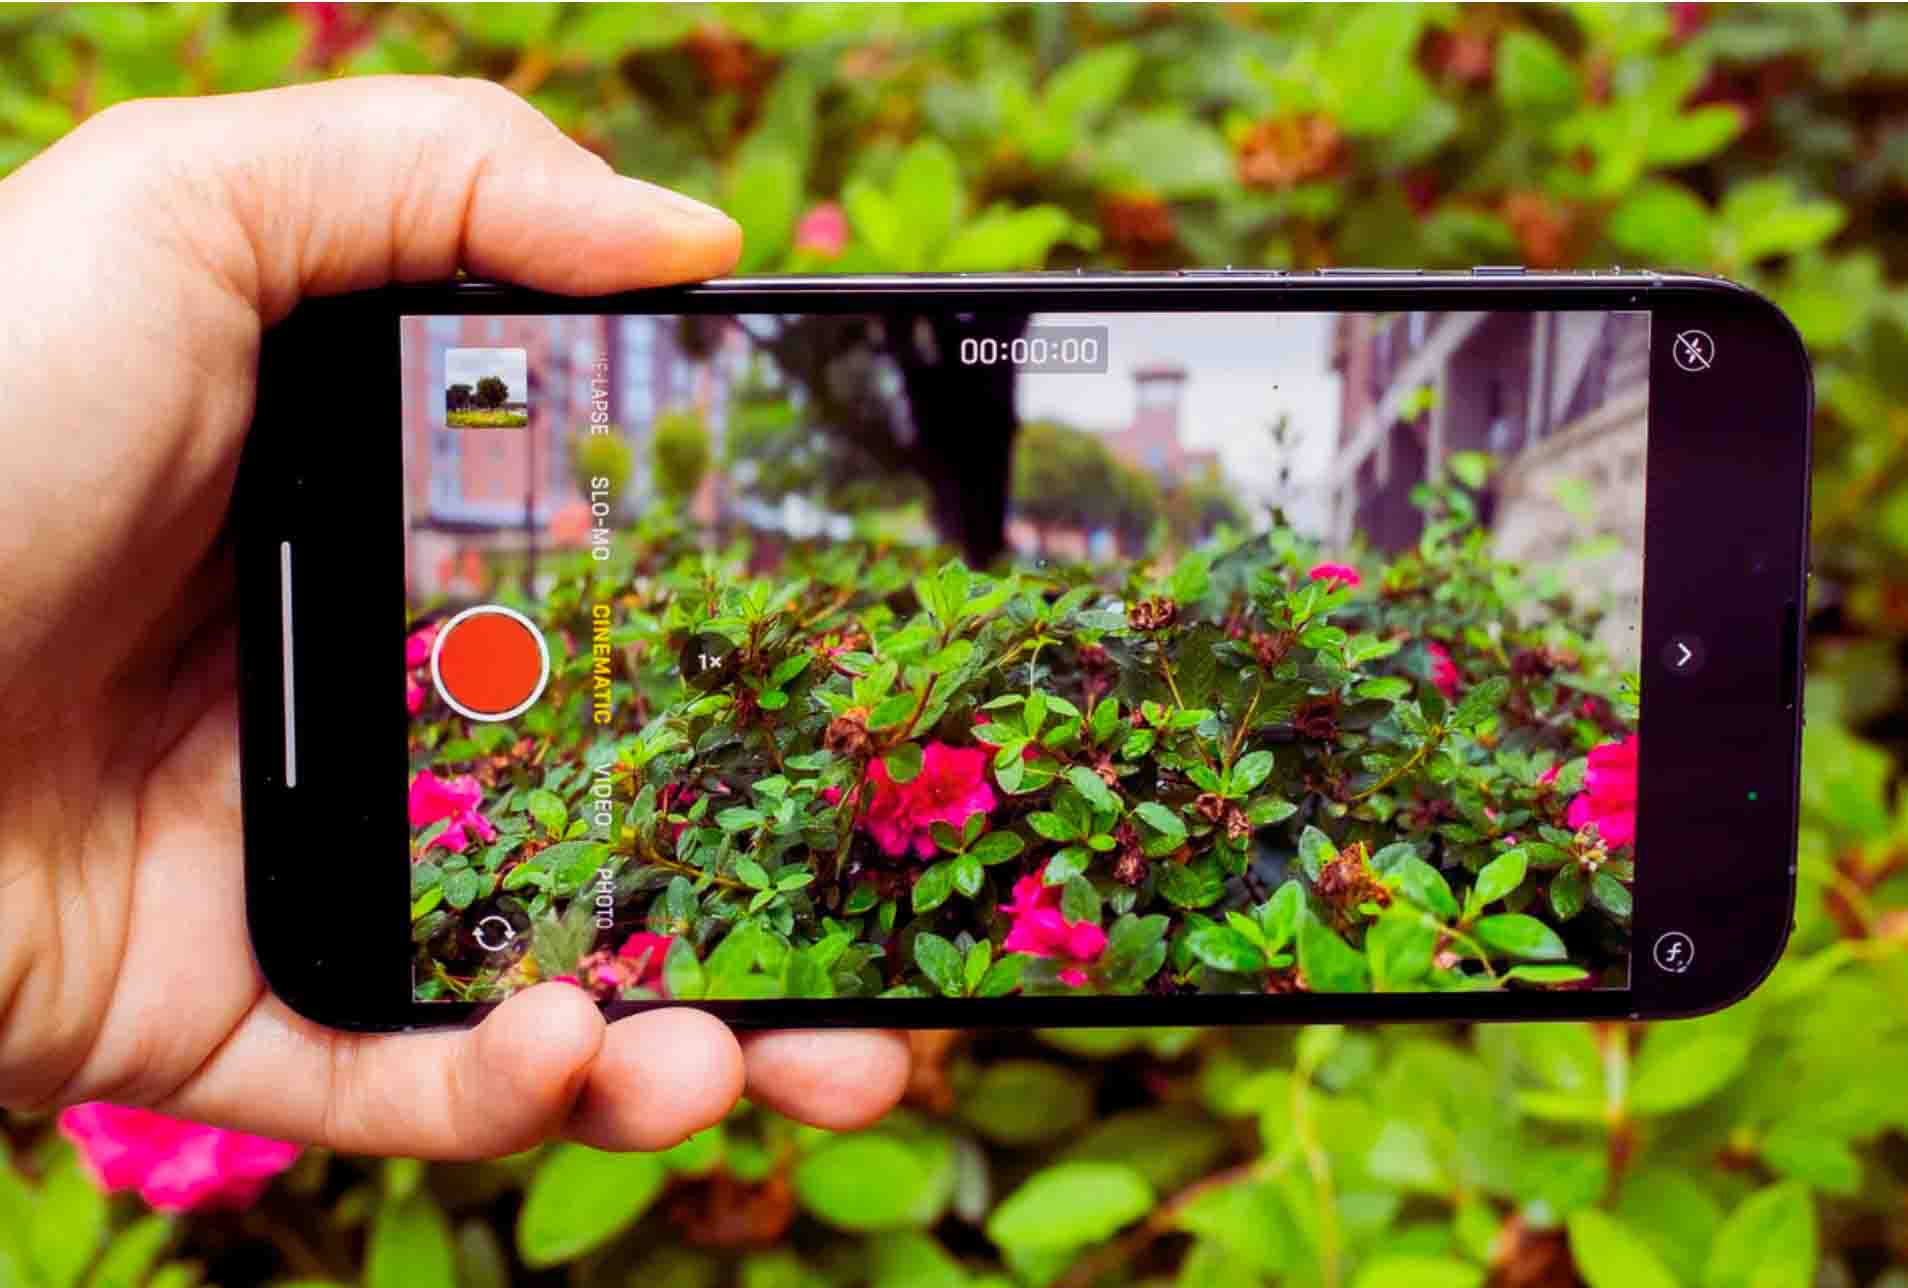 Camera iPhone 13 Pro Max cho khả năng thu sáng tốt hơn, cho chất lượng ảnh vượt trội, khả năng chụp chân dung mà không phải dùng đến phần mềm của bên thứ 3. NhungAlo Store